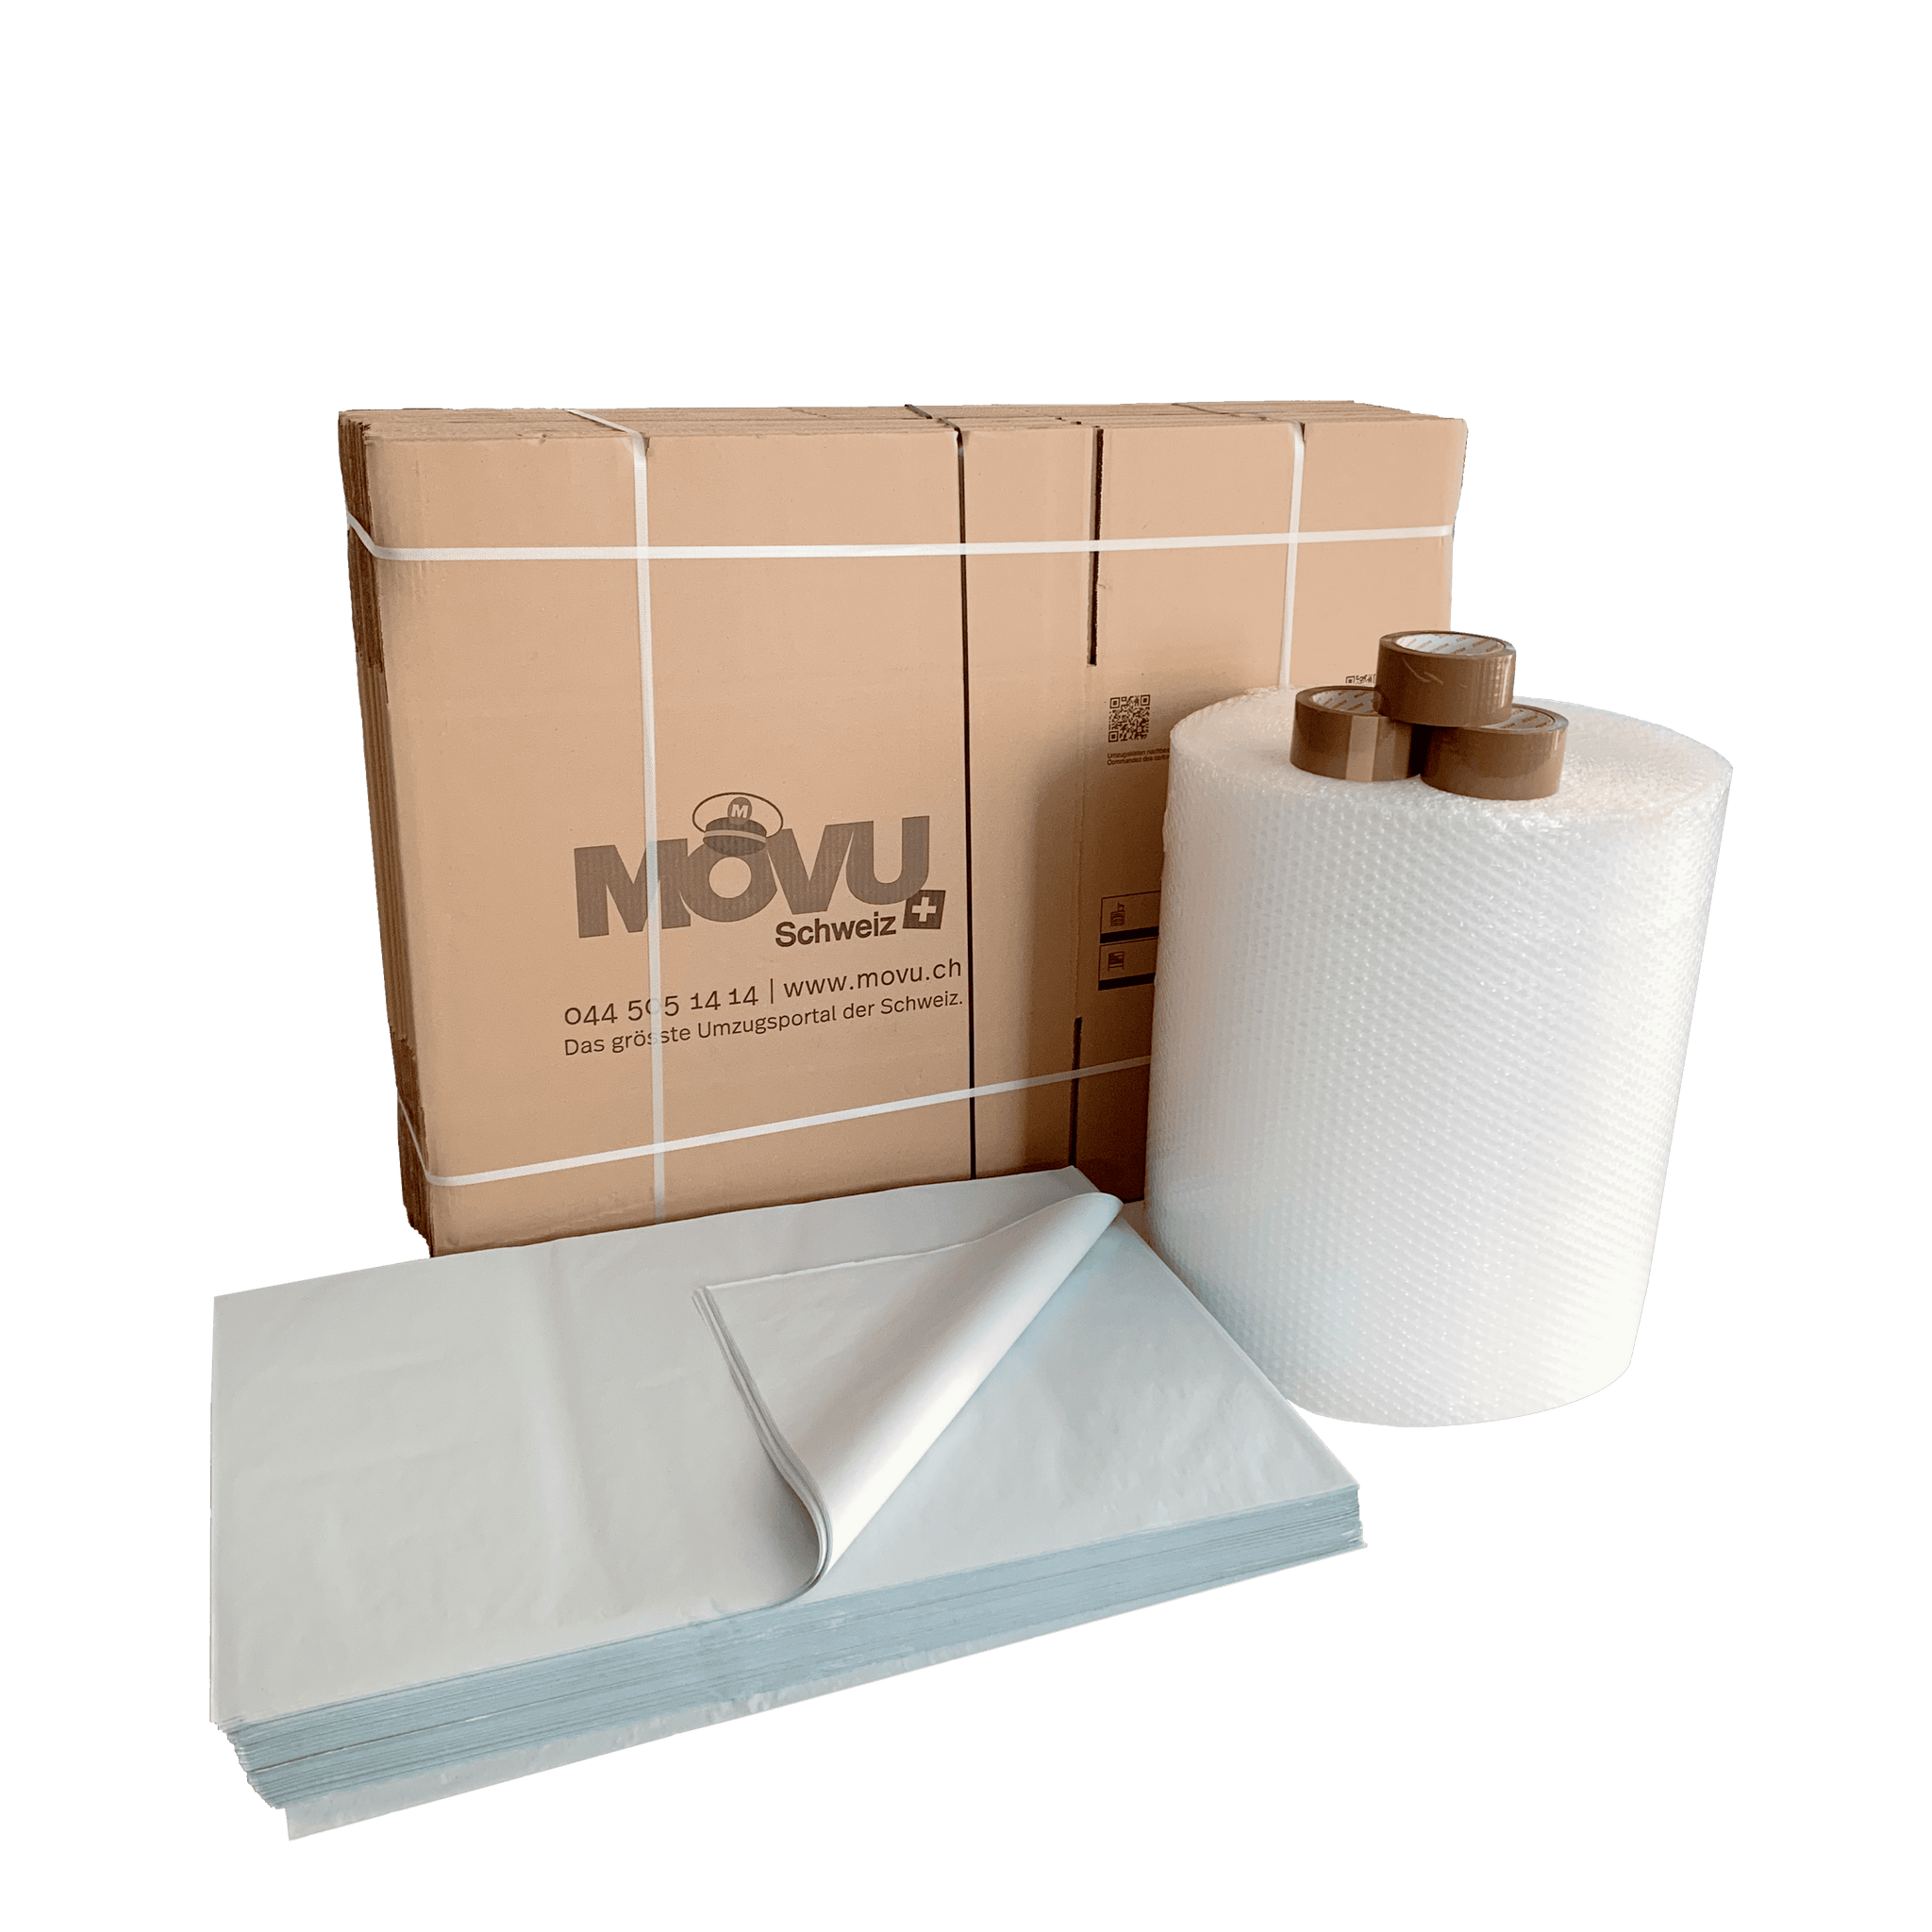 Kit déménagement (cartons, papier bulle et emballage & ruban adhésif)